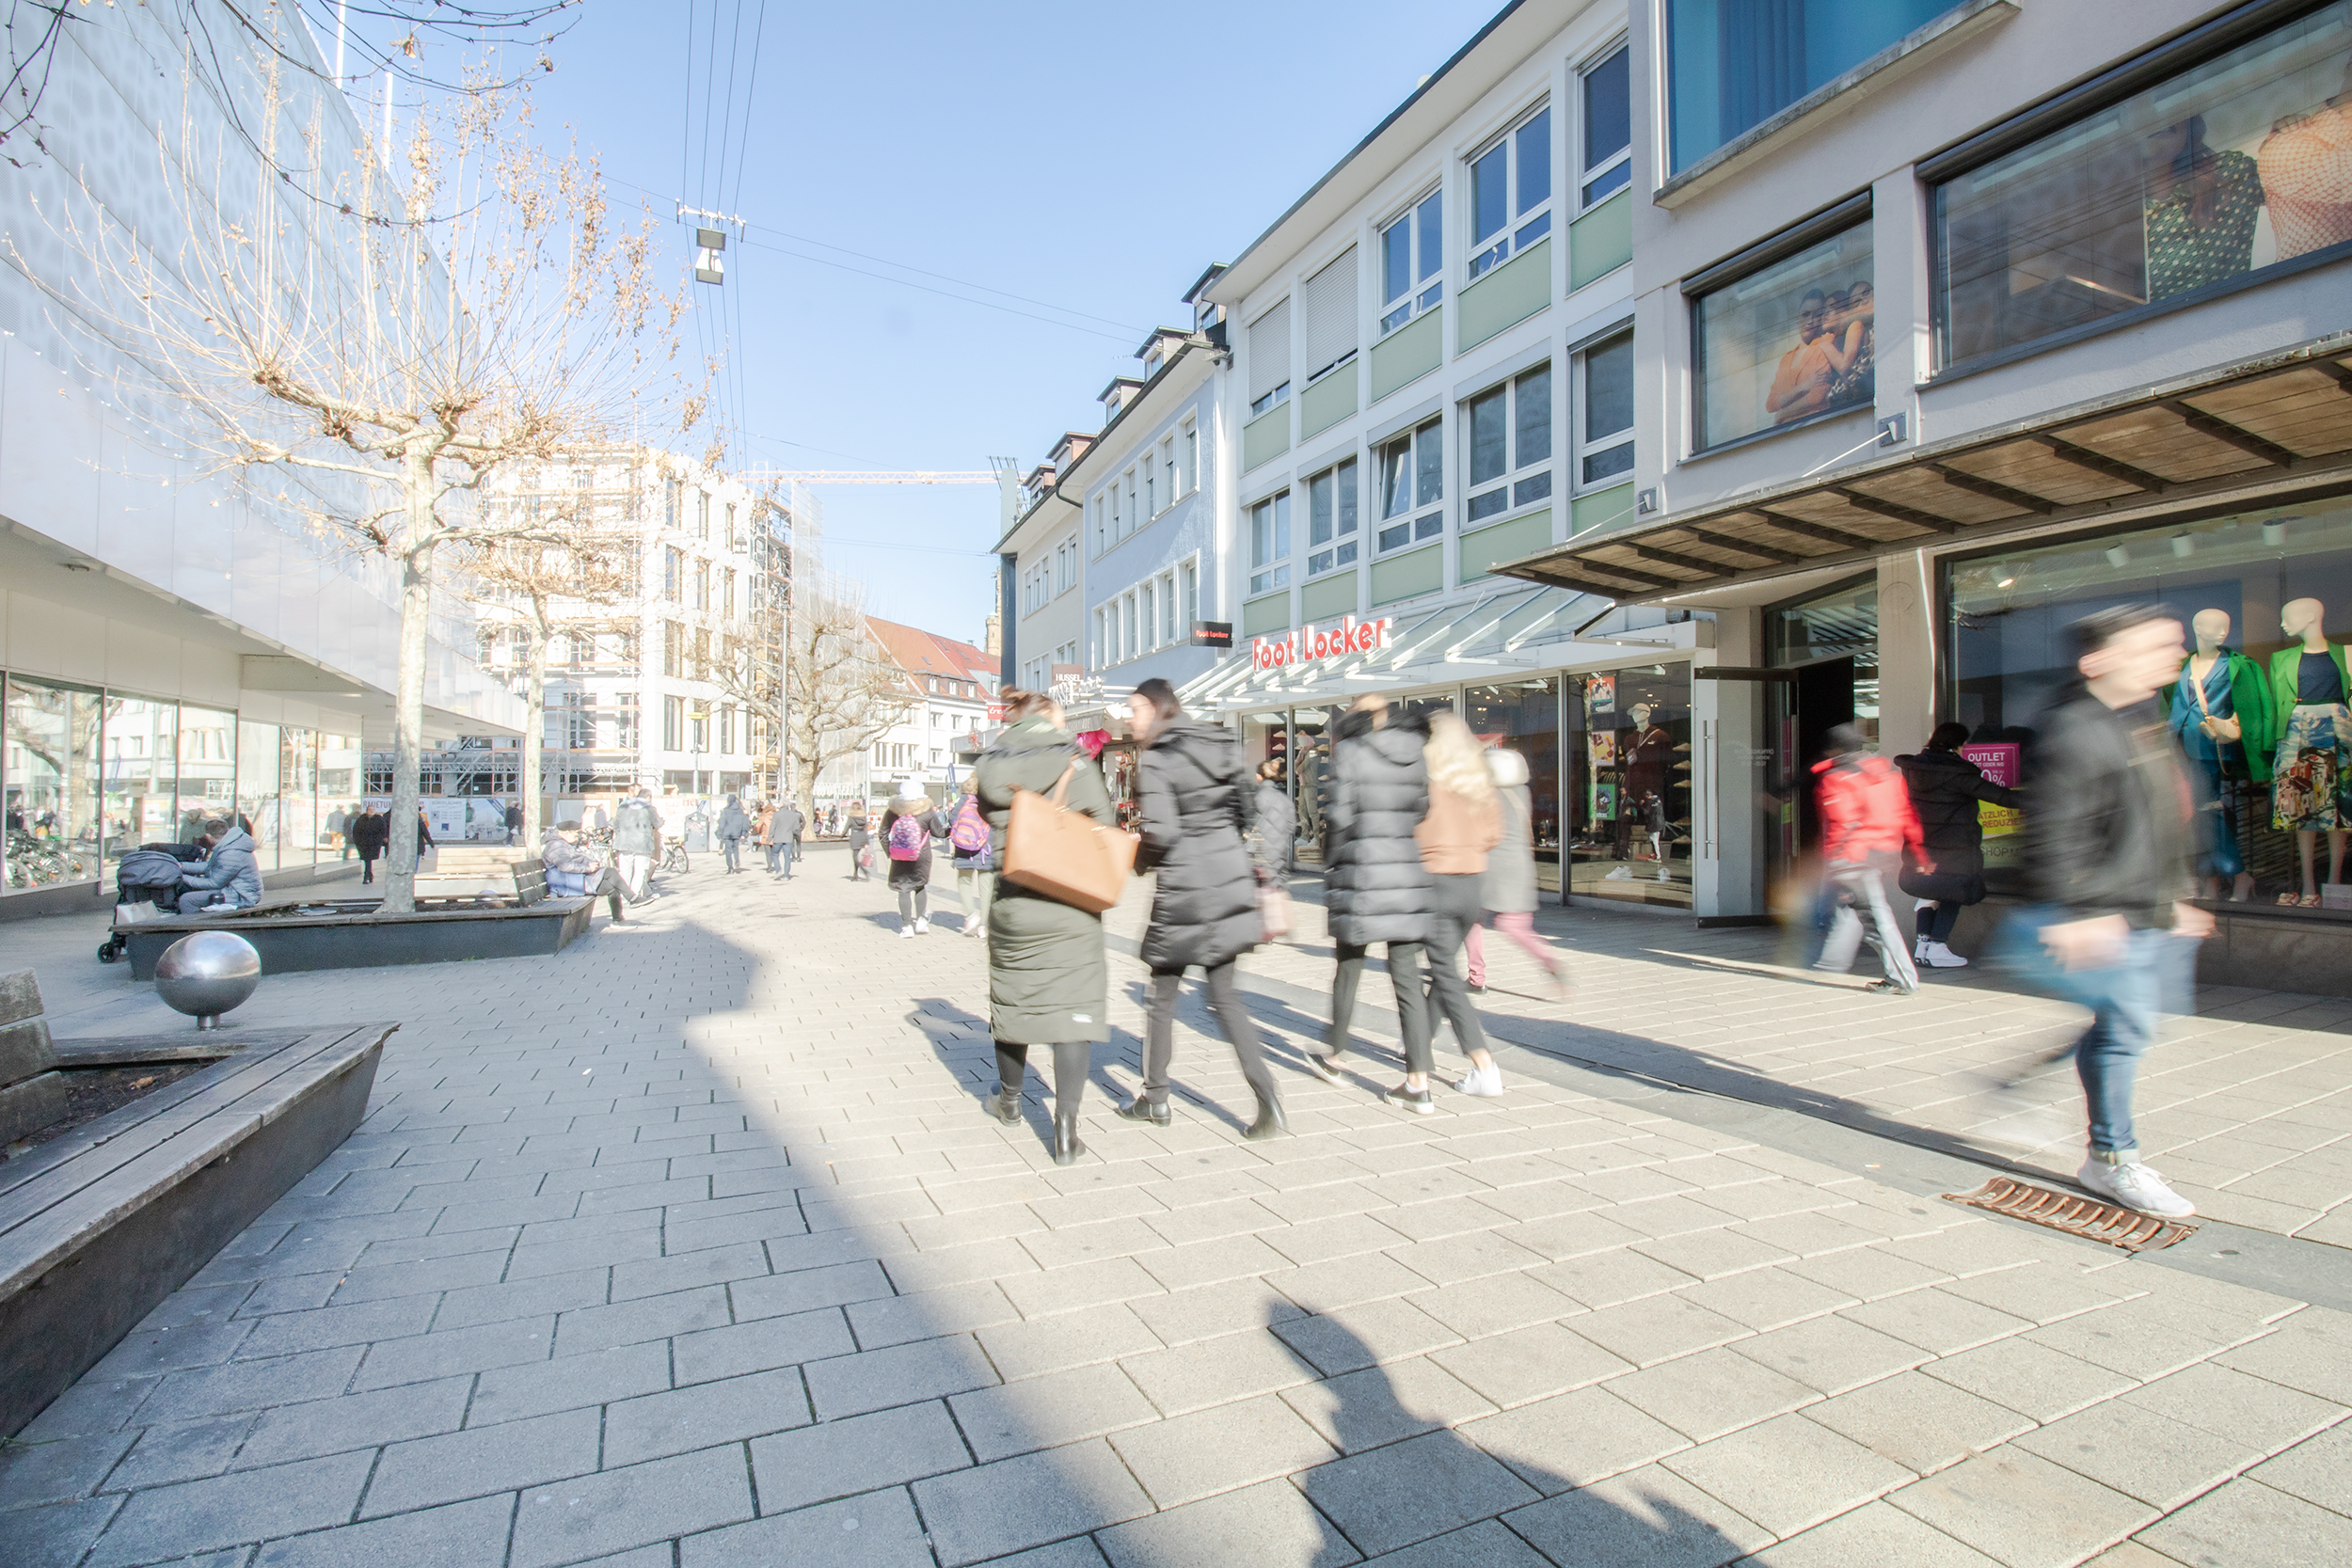 Das Bild zeigt die Fußgängerzone mit dem Blick Richtung Innenstadt. Links im Bild ist das Einkaufszentrum Galeria Kaufhof zu sehne. Rechts sind weitere kleine Läden abgebildet. Passanten laufen die Fußgängerzone entlang.